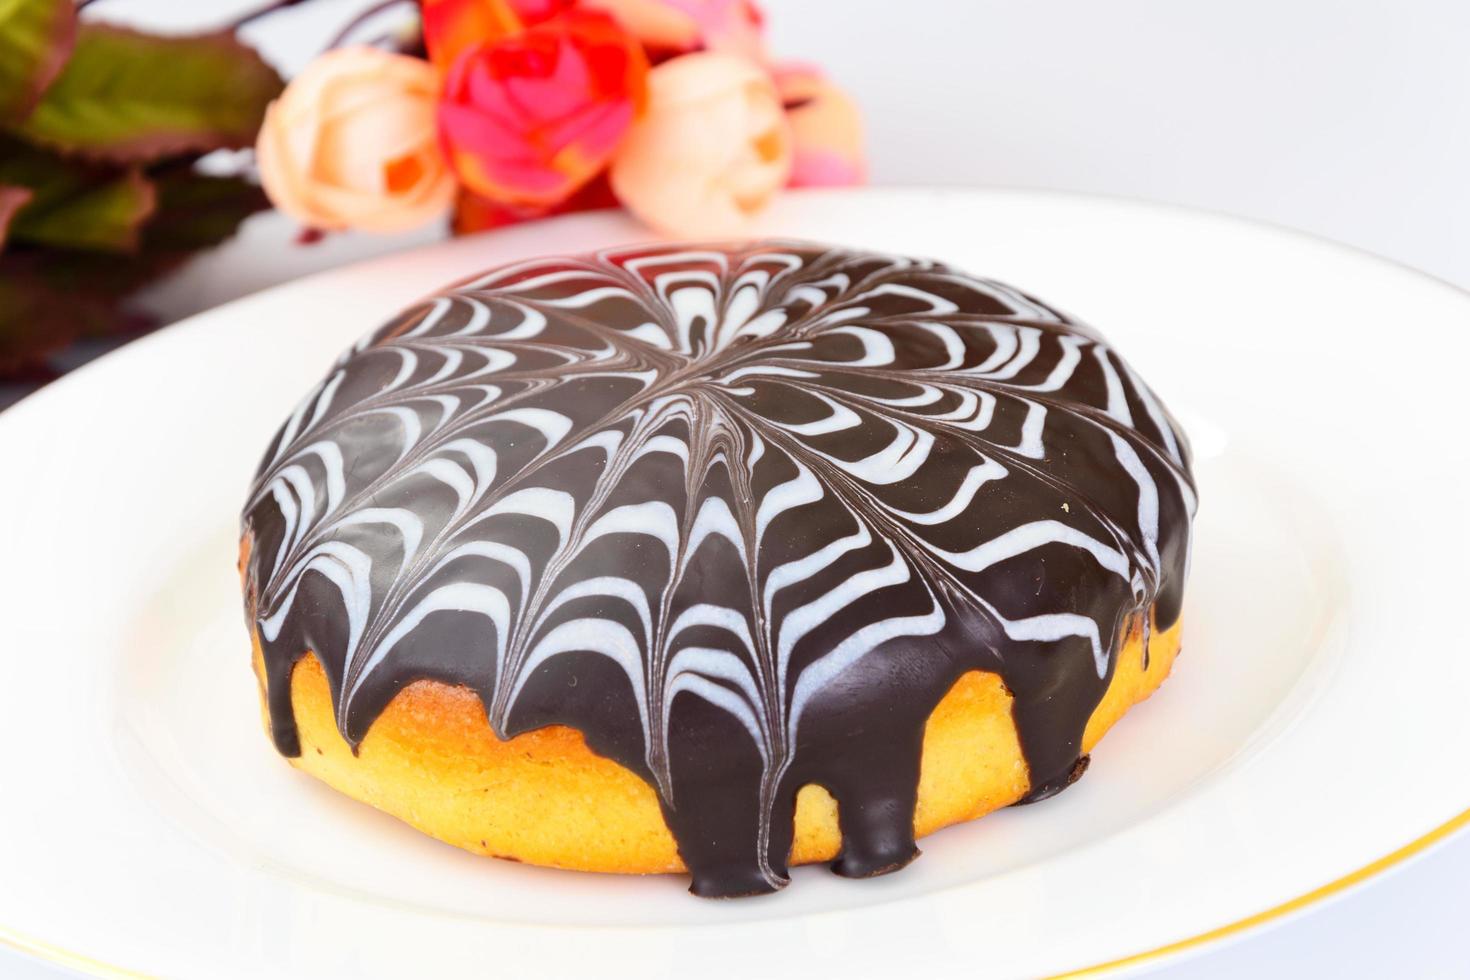 gâteau au chocolat blanc et noir. photo